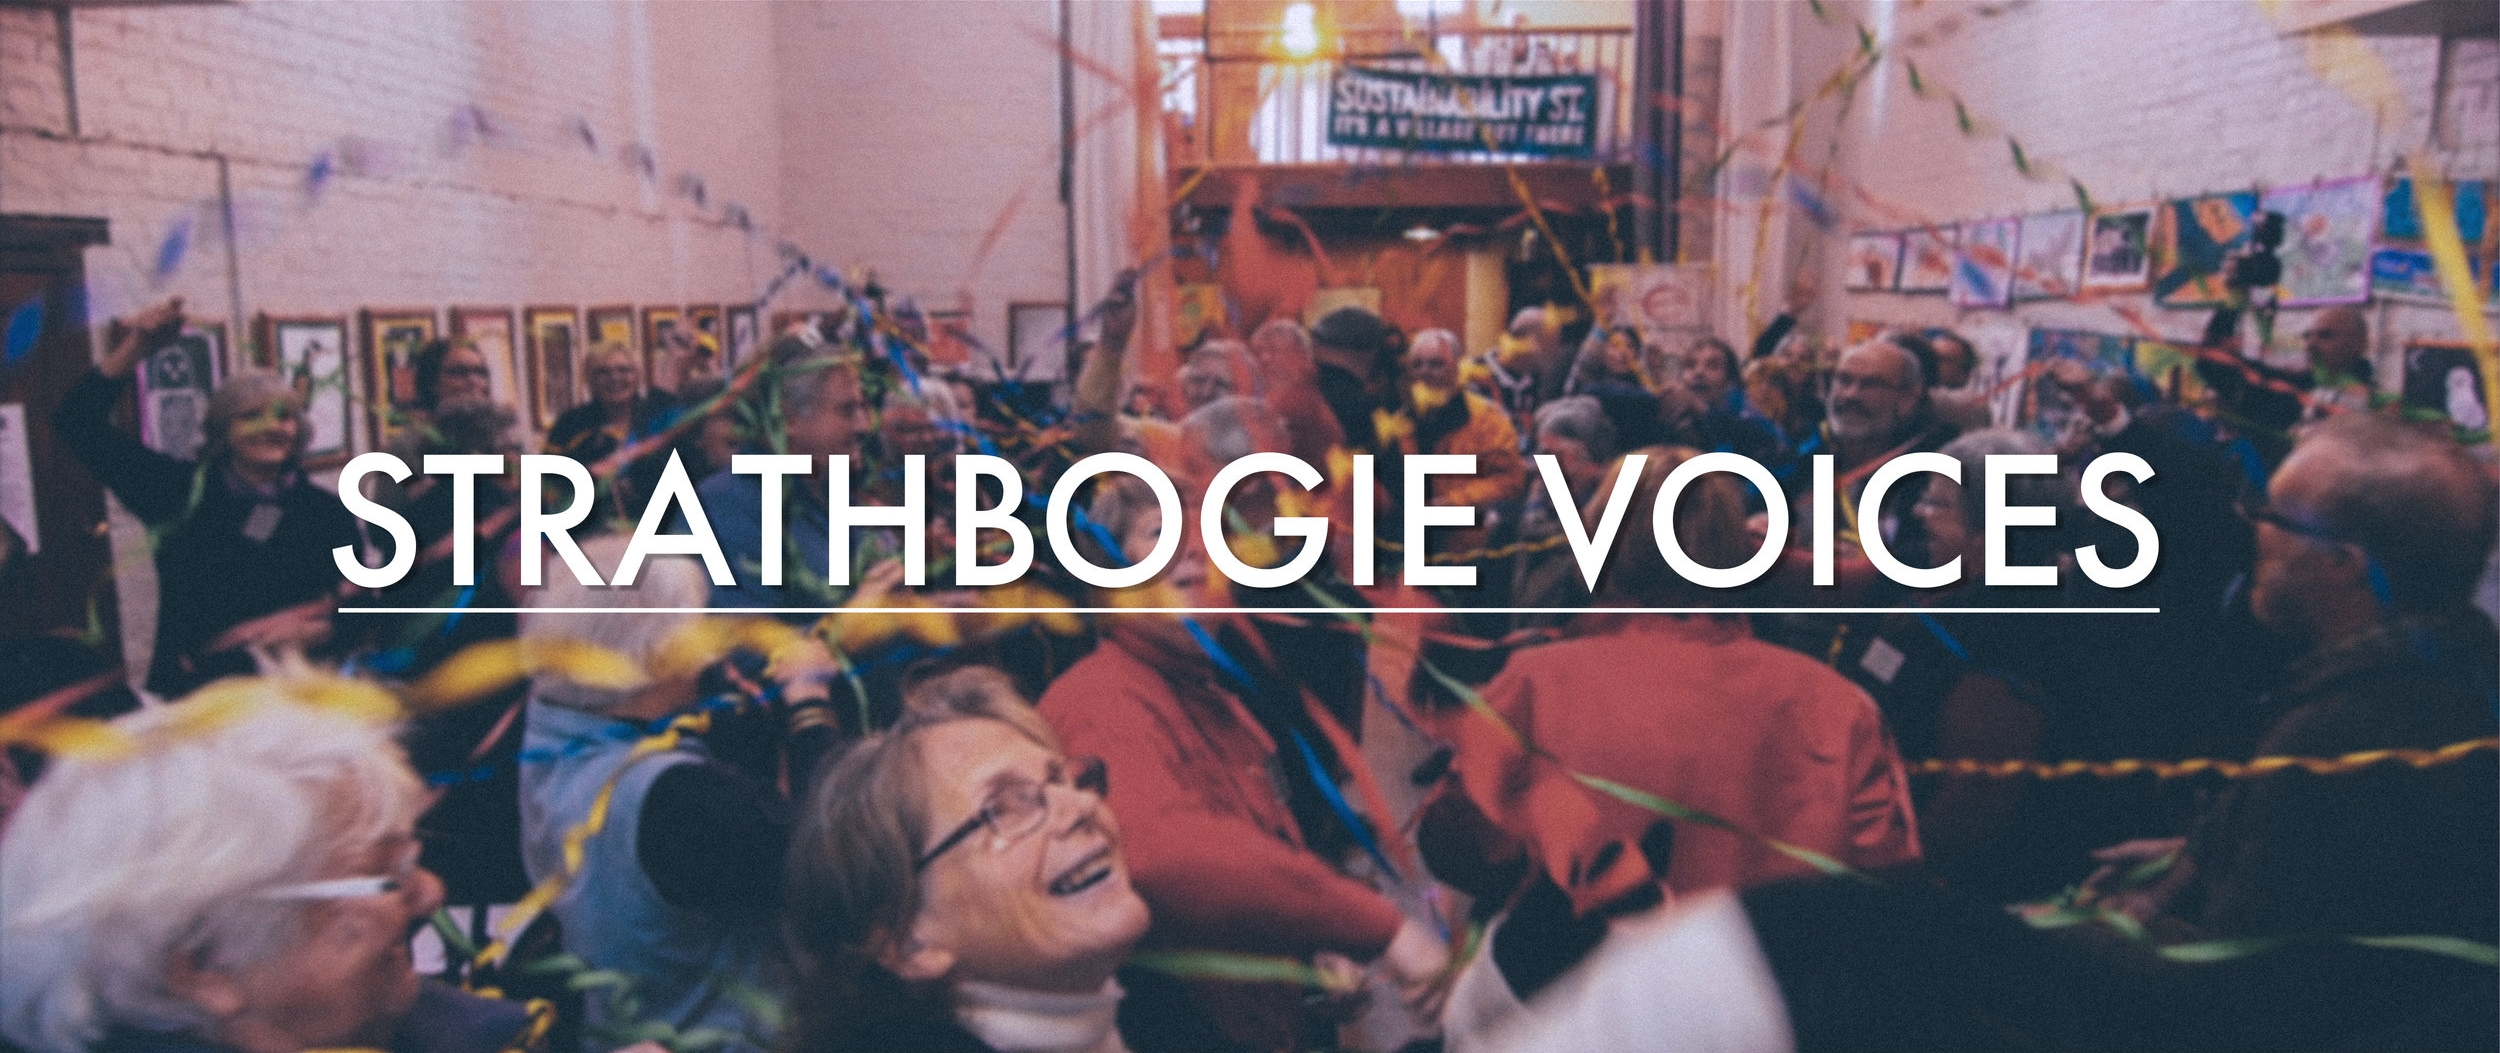 strathbogie-voices-intro.jpg